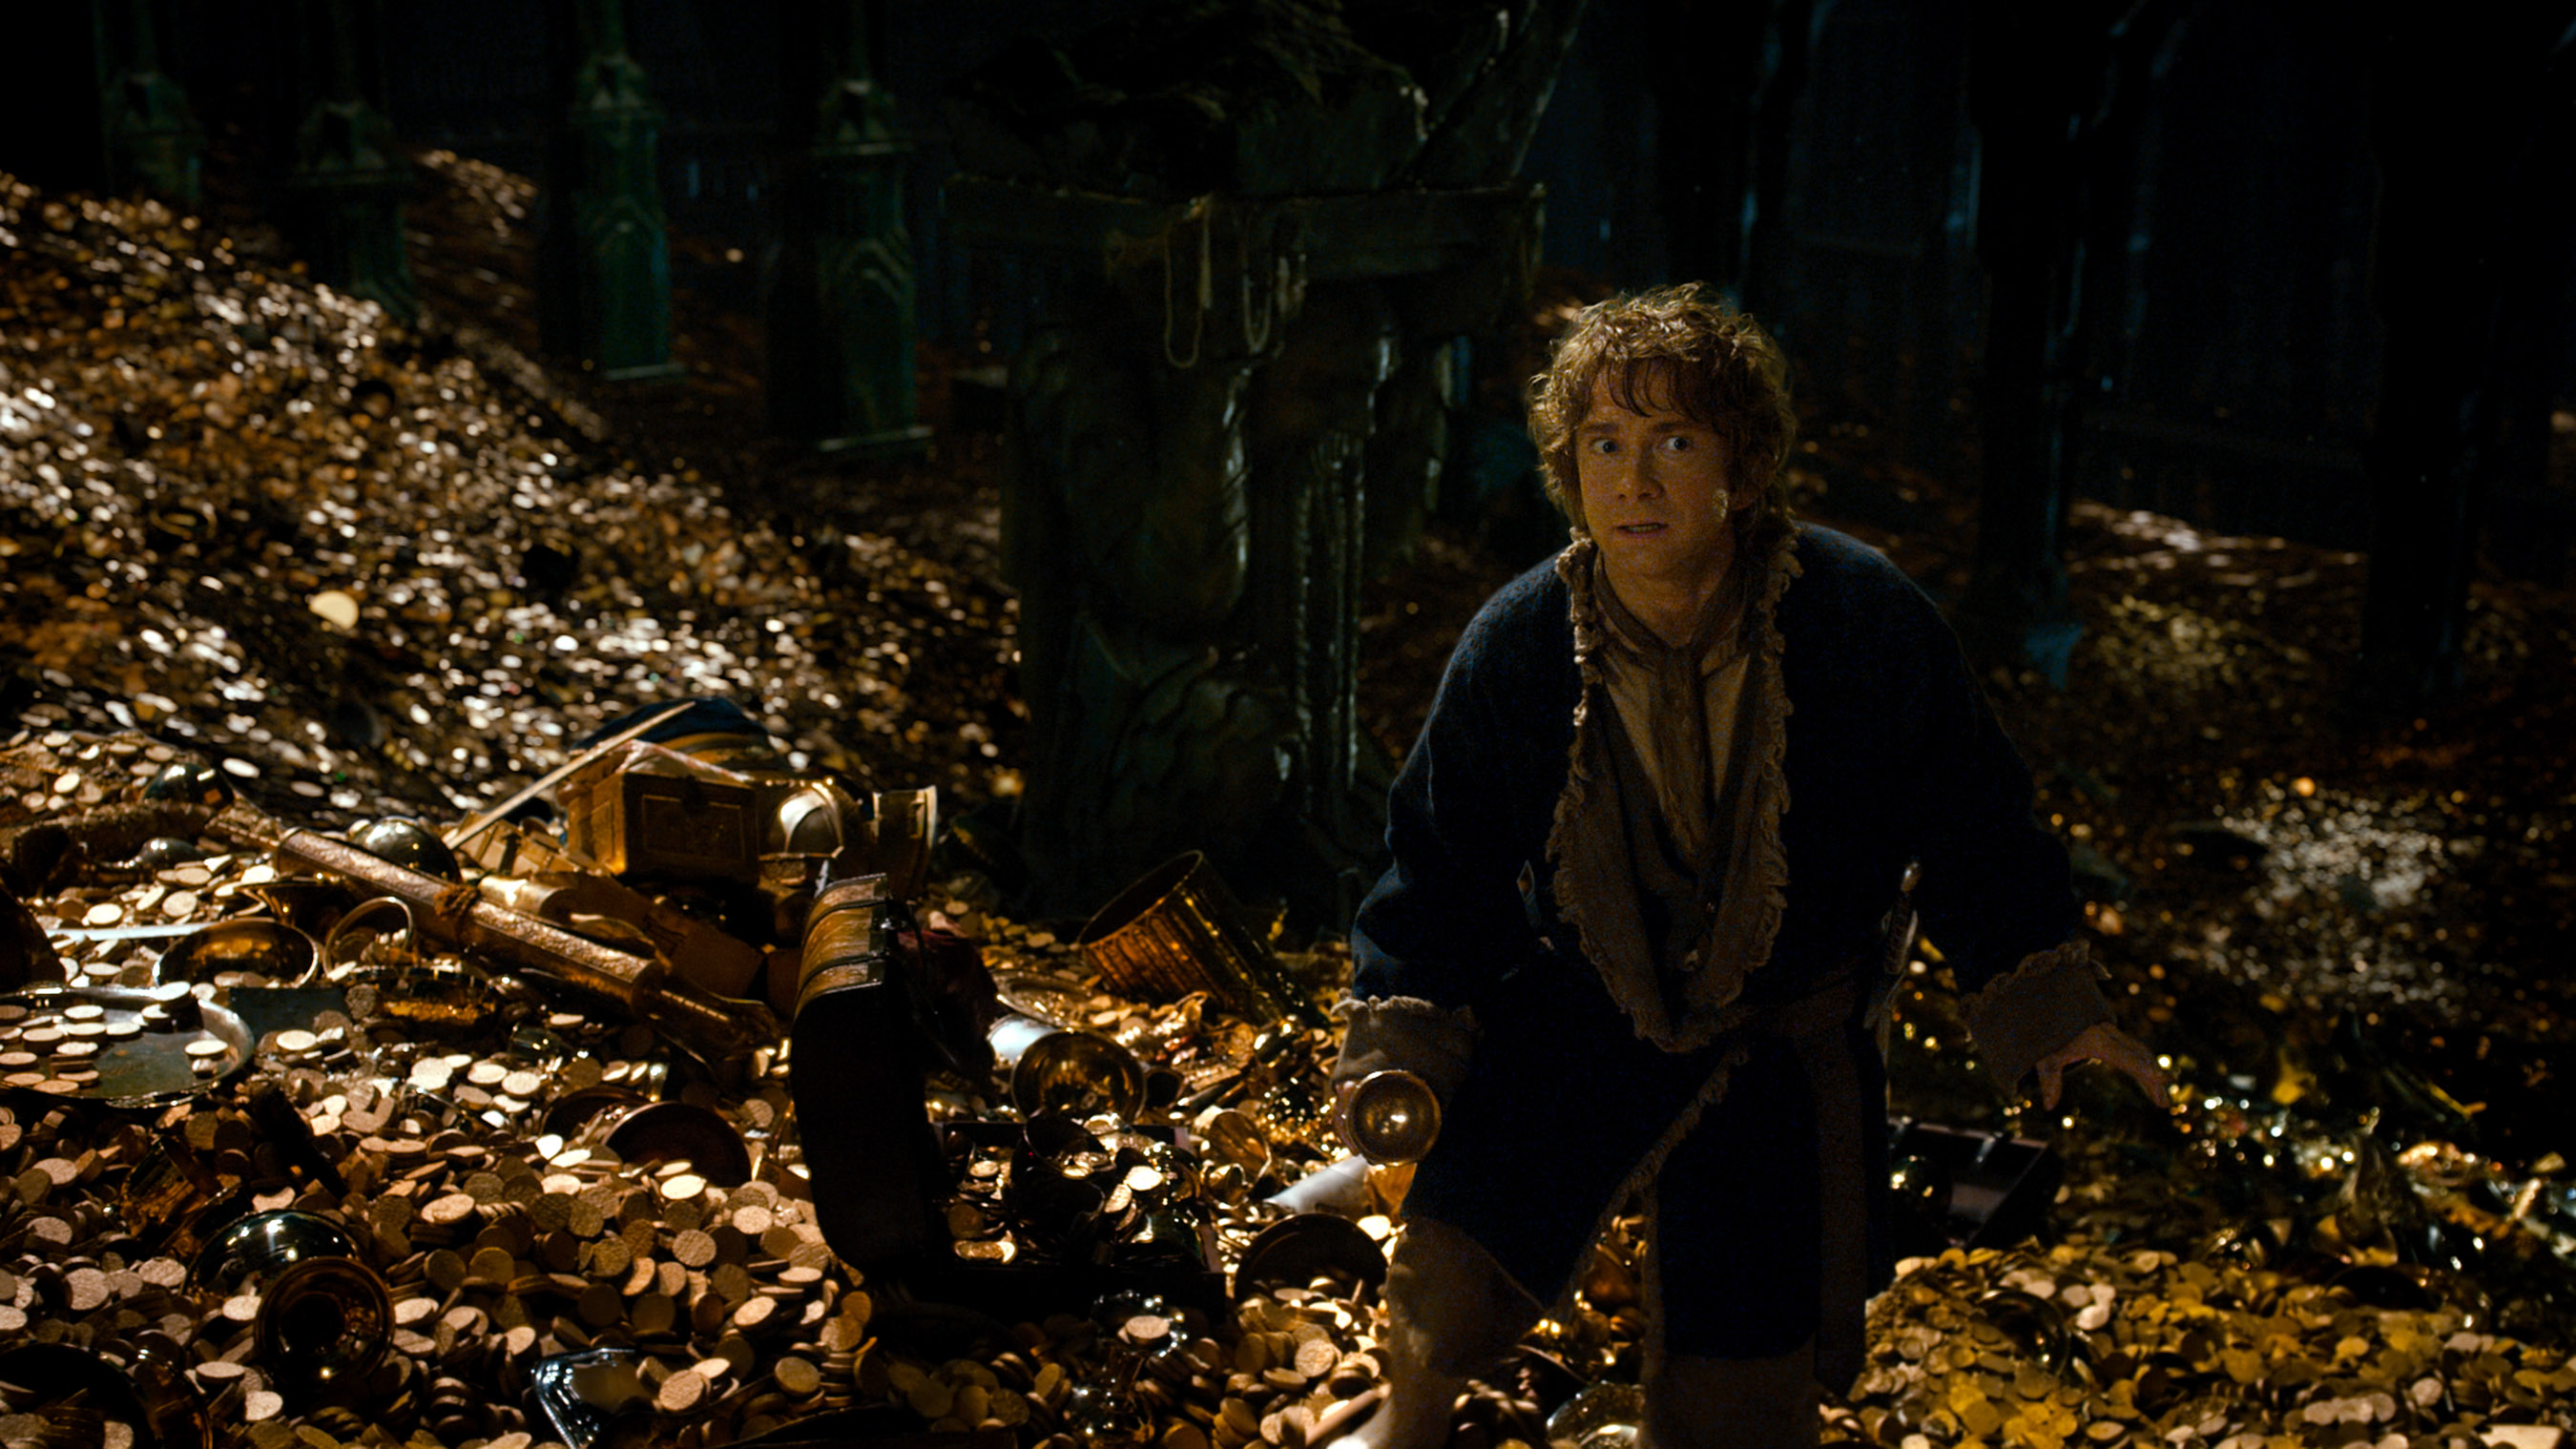 Descarga gratuita de fondo de pantalla para móvil de El Hobbit: La Desolación De Smaug, El Señor De Los Anillos, Películas.